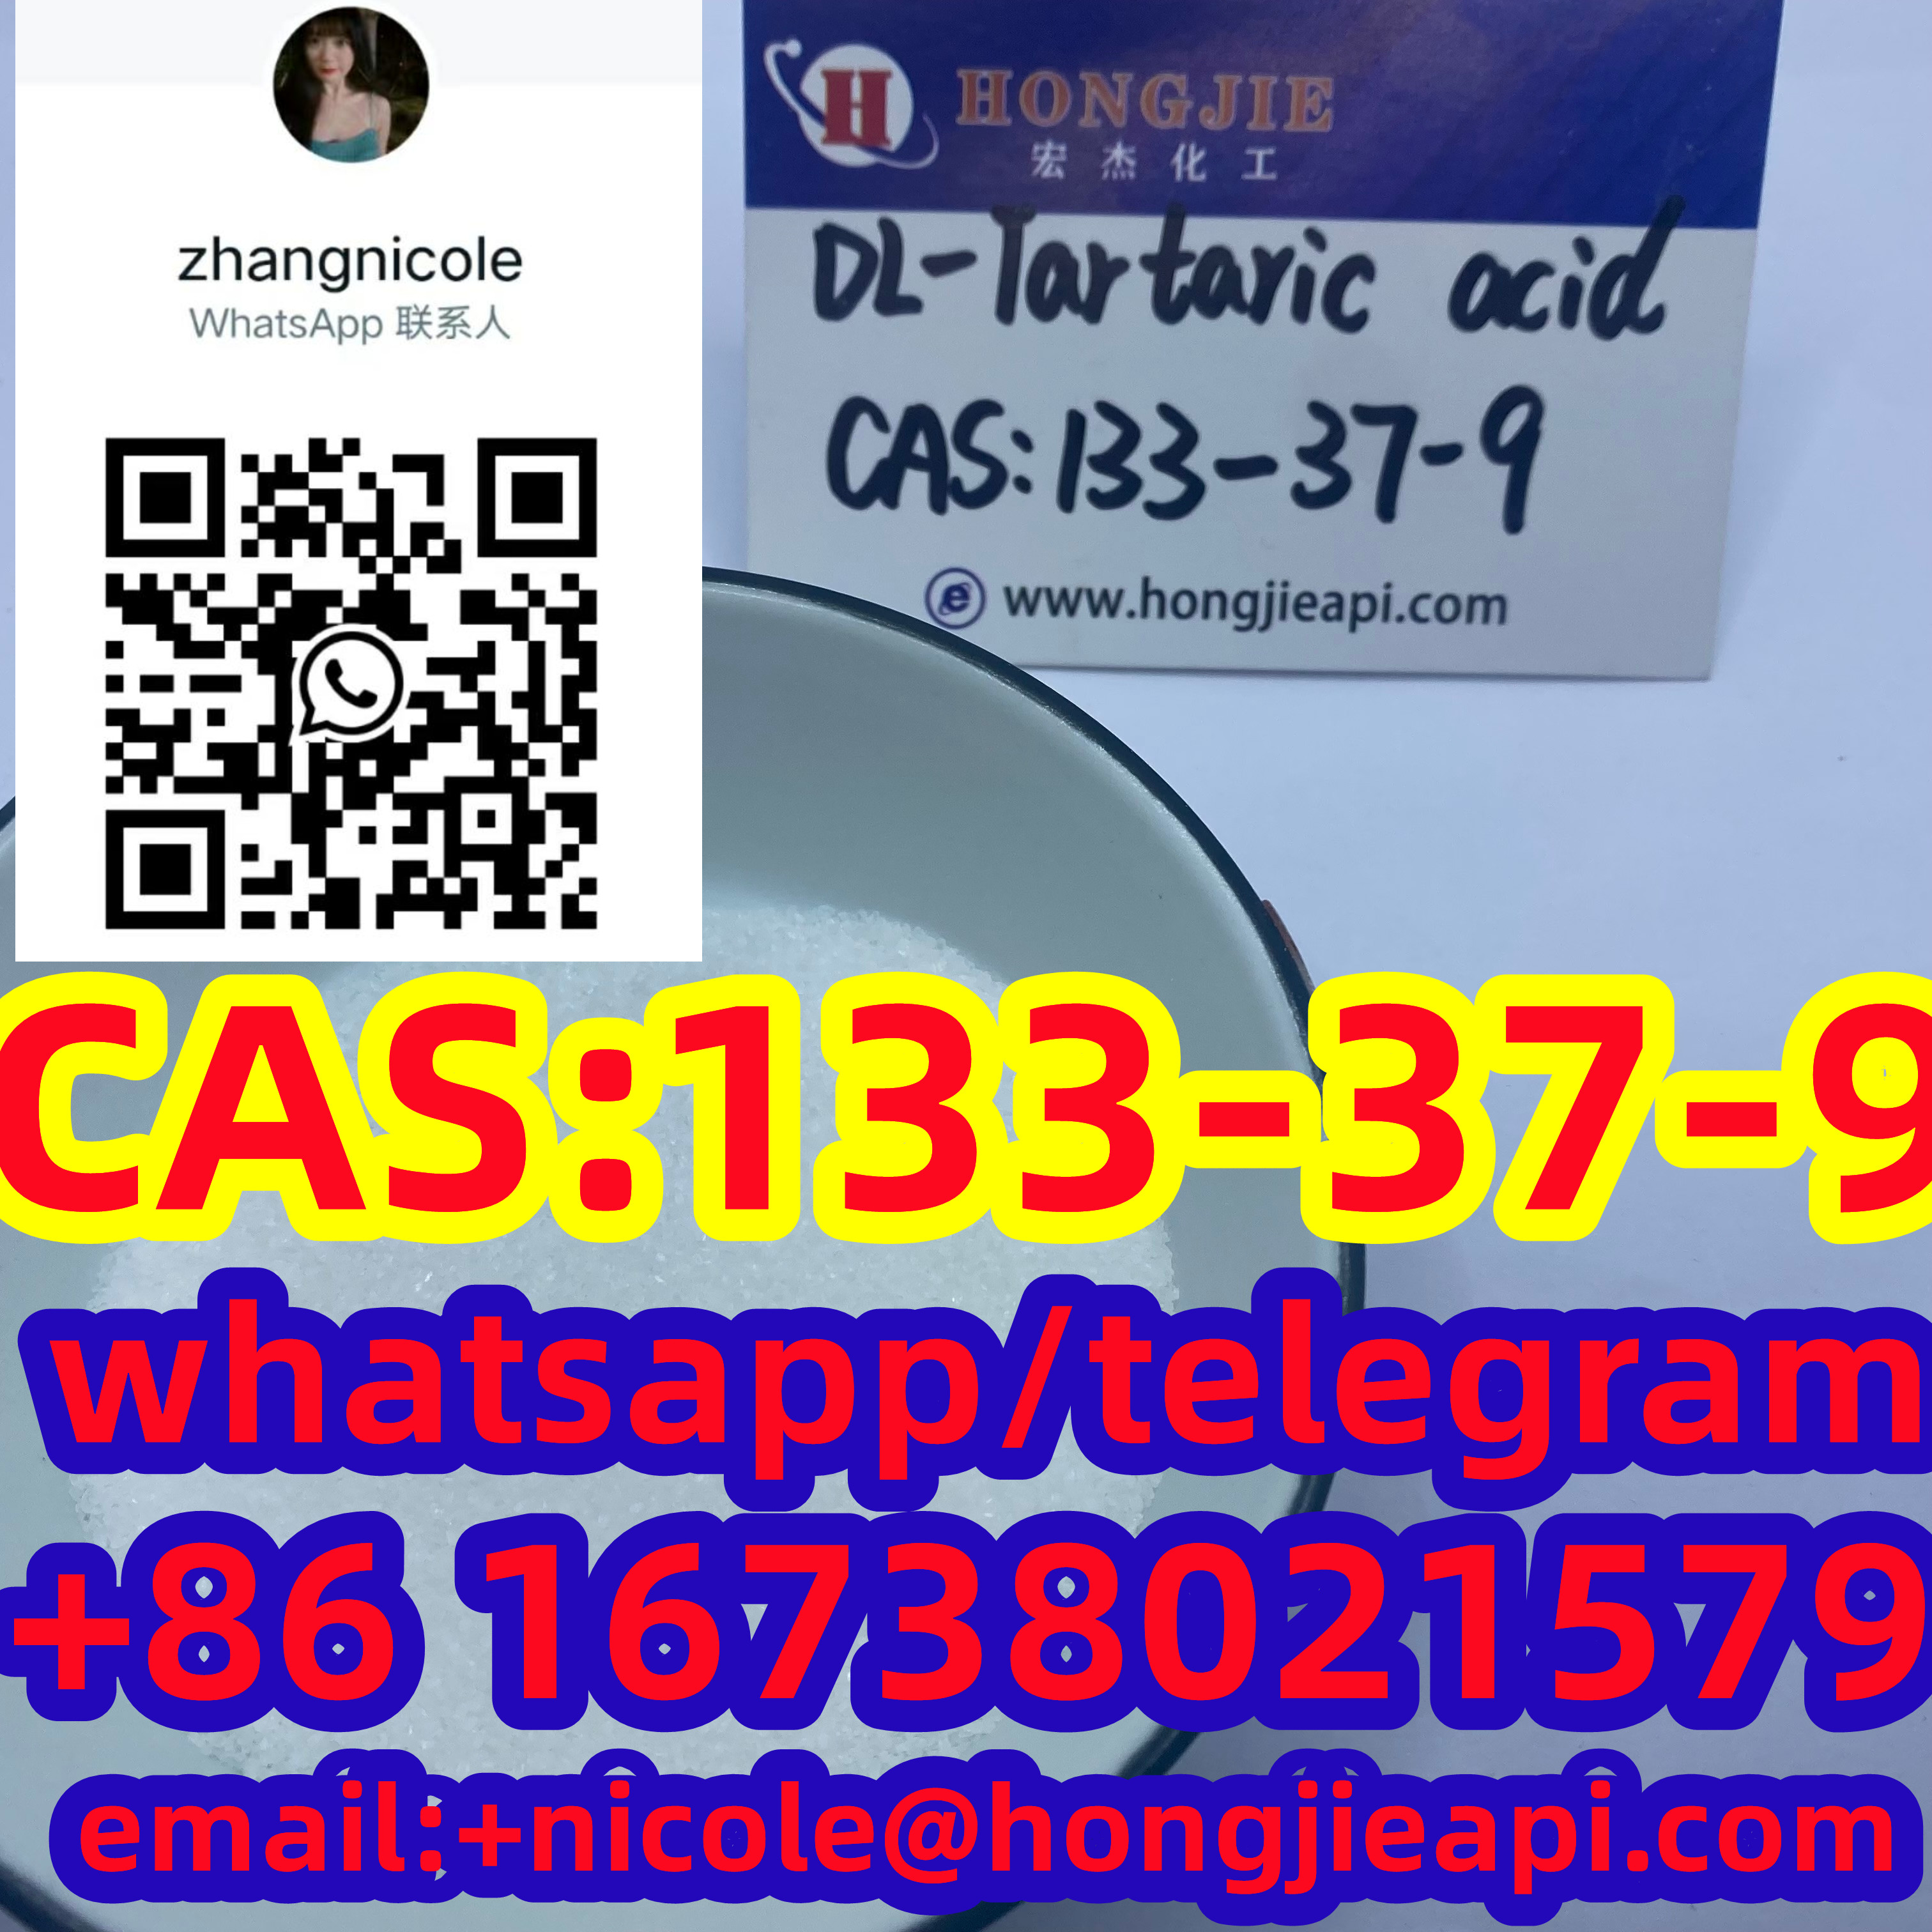 CAS 133-37-9 DL-Tartaric acid new hot sell